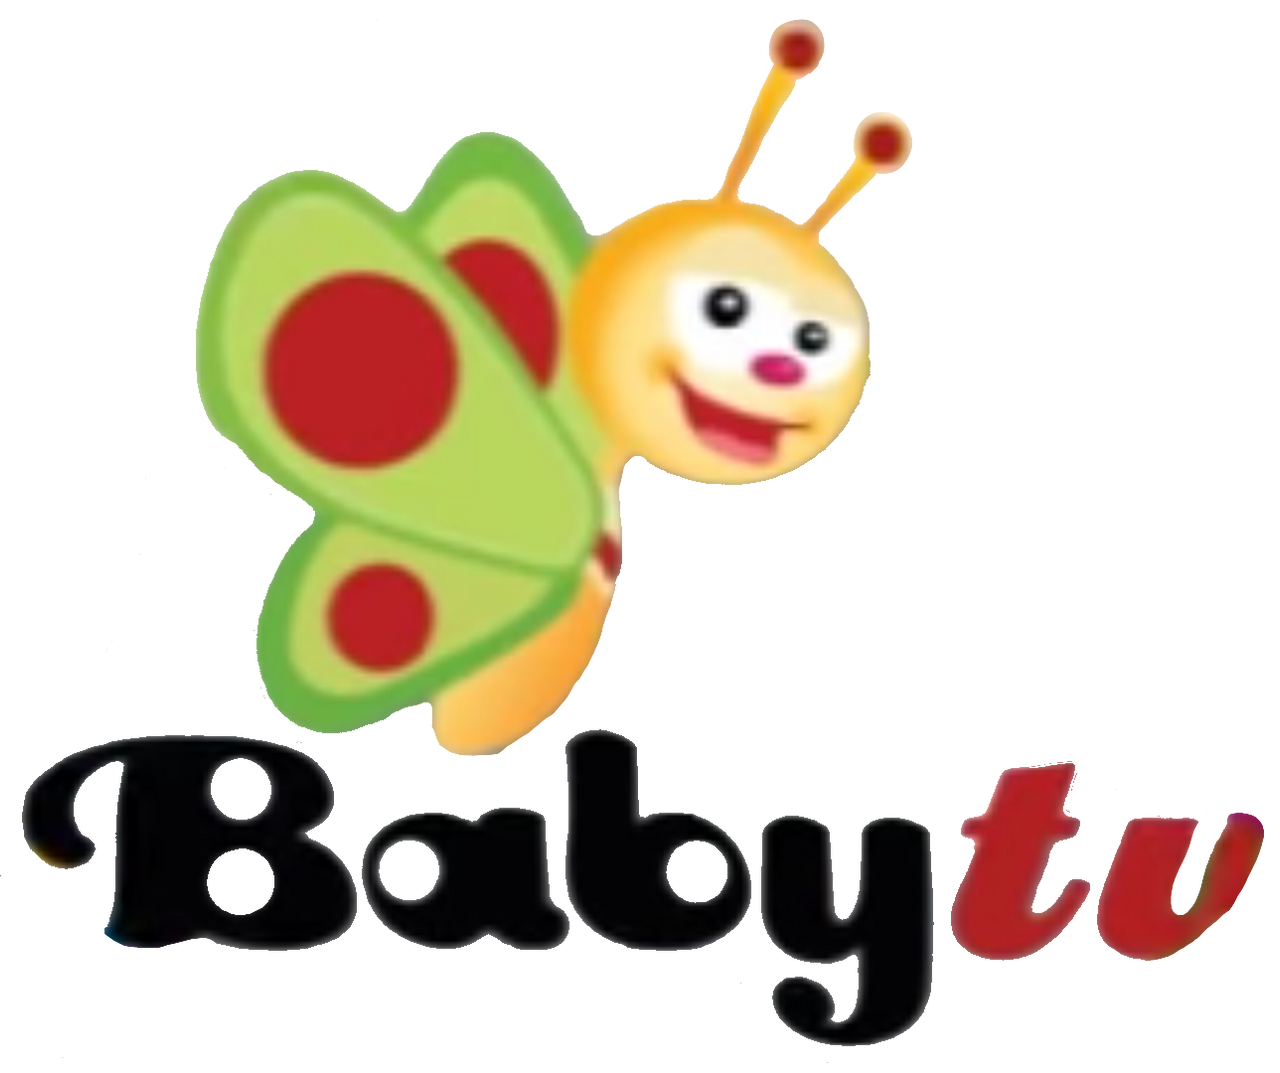 Jumbo Logo (TVOKids Style) by BobbyInteraction5 on DeviantArt